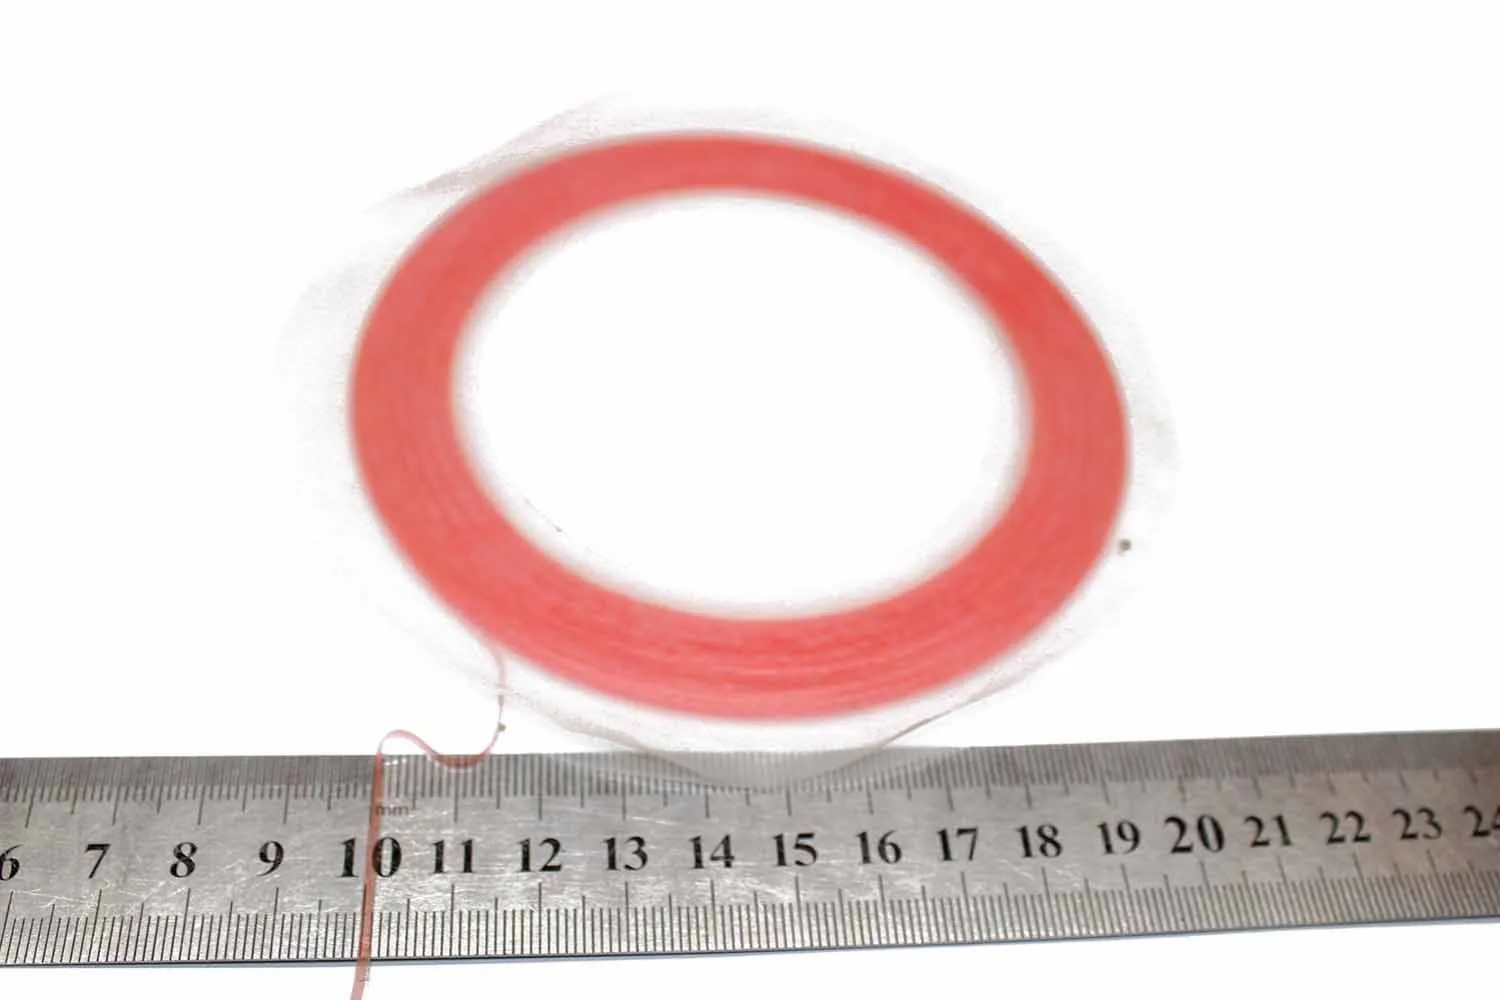 Прозрачный двухсторонний скотч красный 1mm 30метров, 3M оригинал, для дисплеев и задних крышек